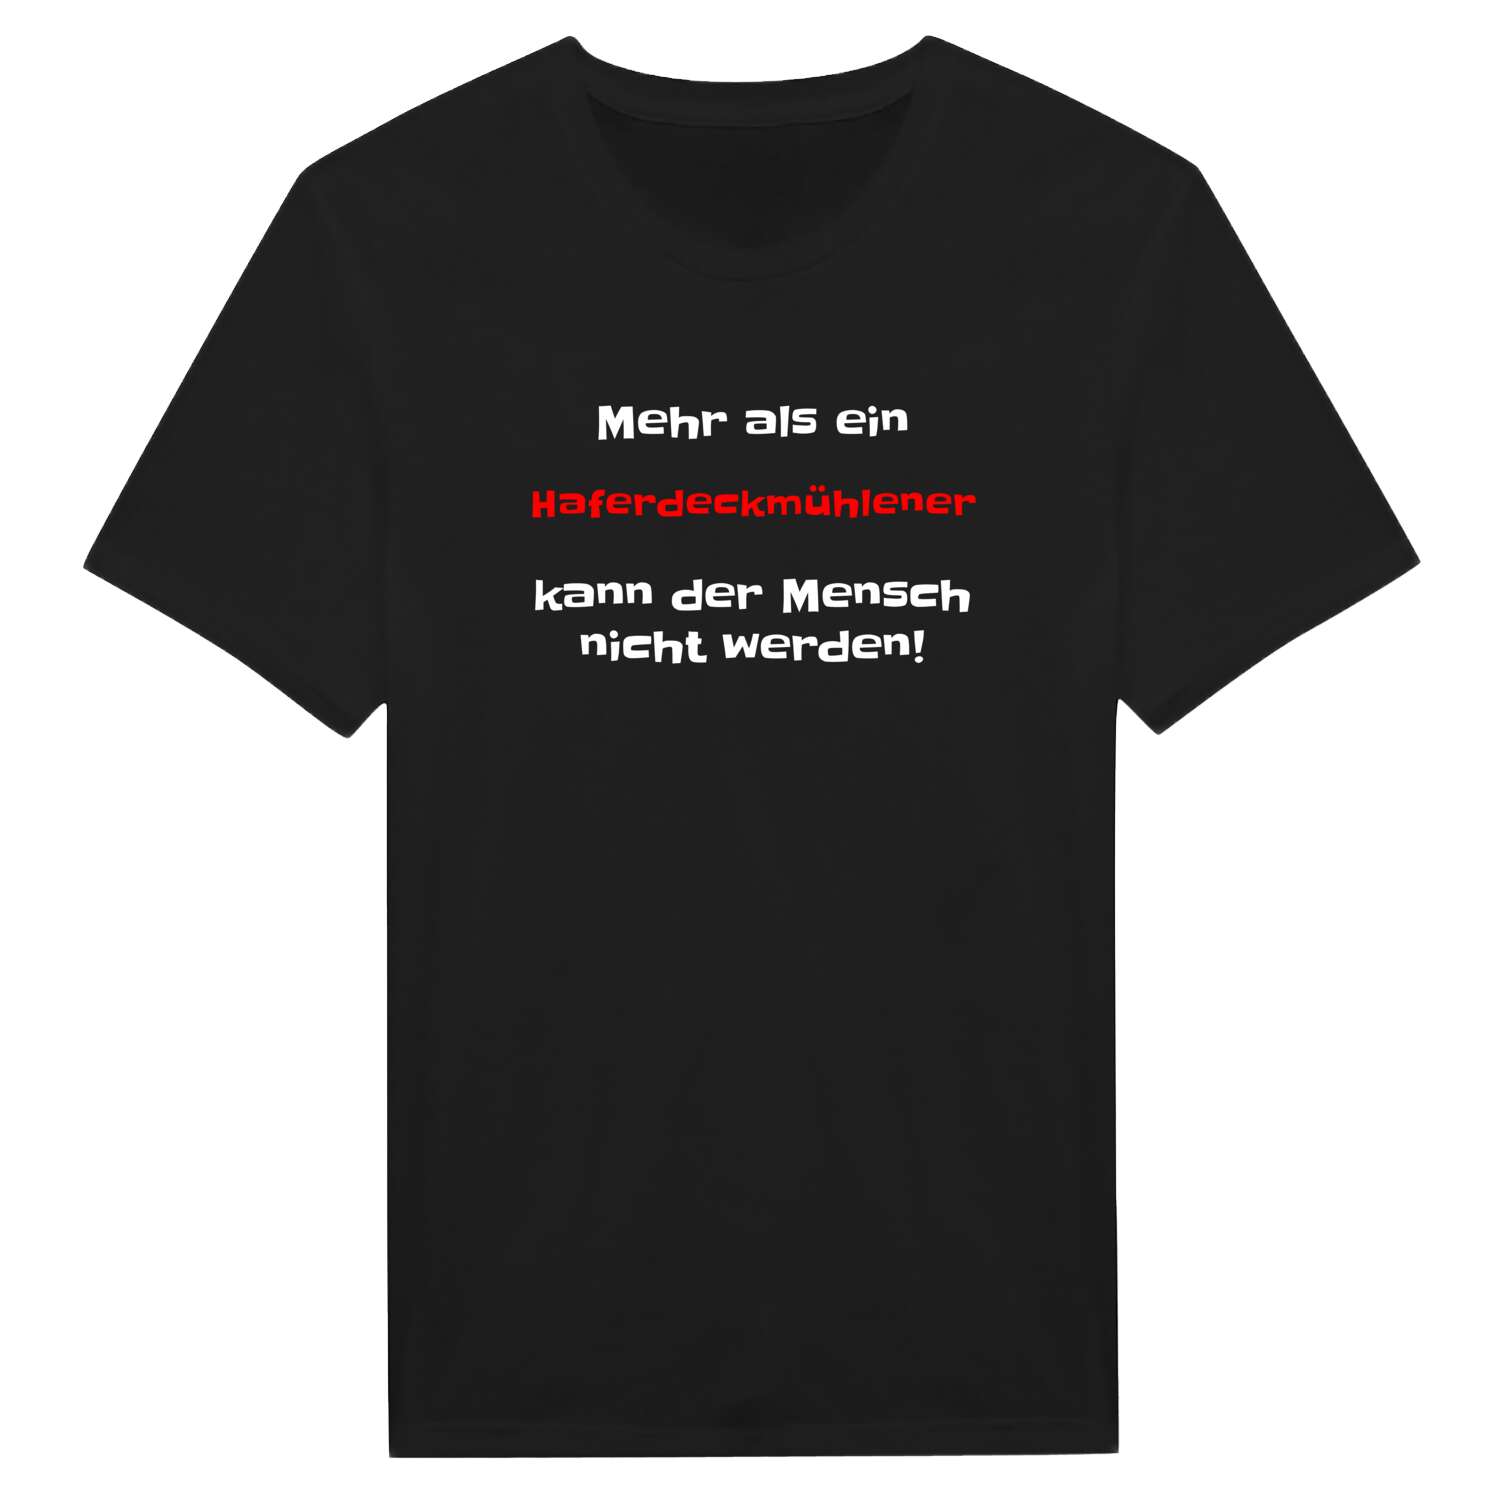 Haferdeckmühle T-Shirt »Mehr als ein«